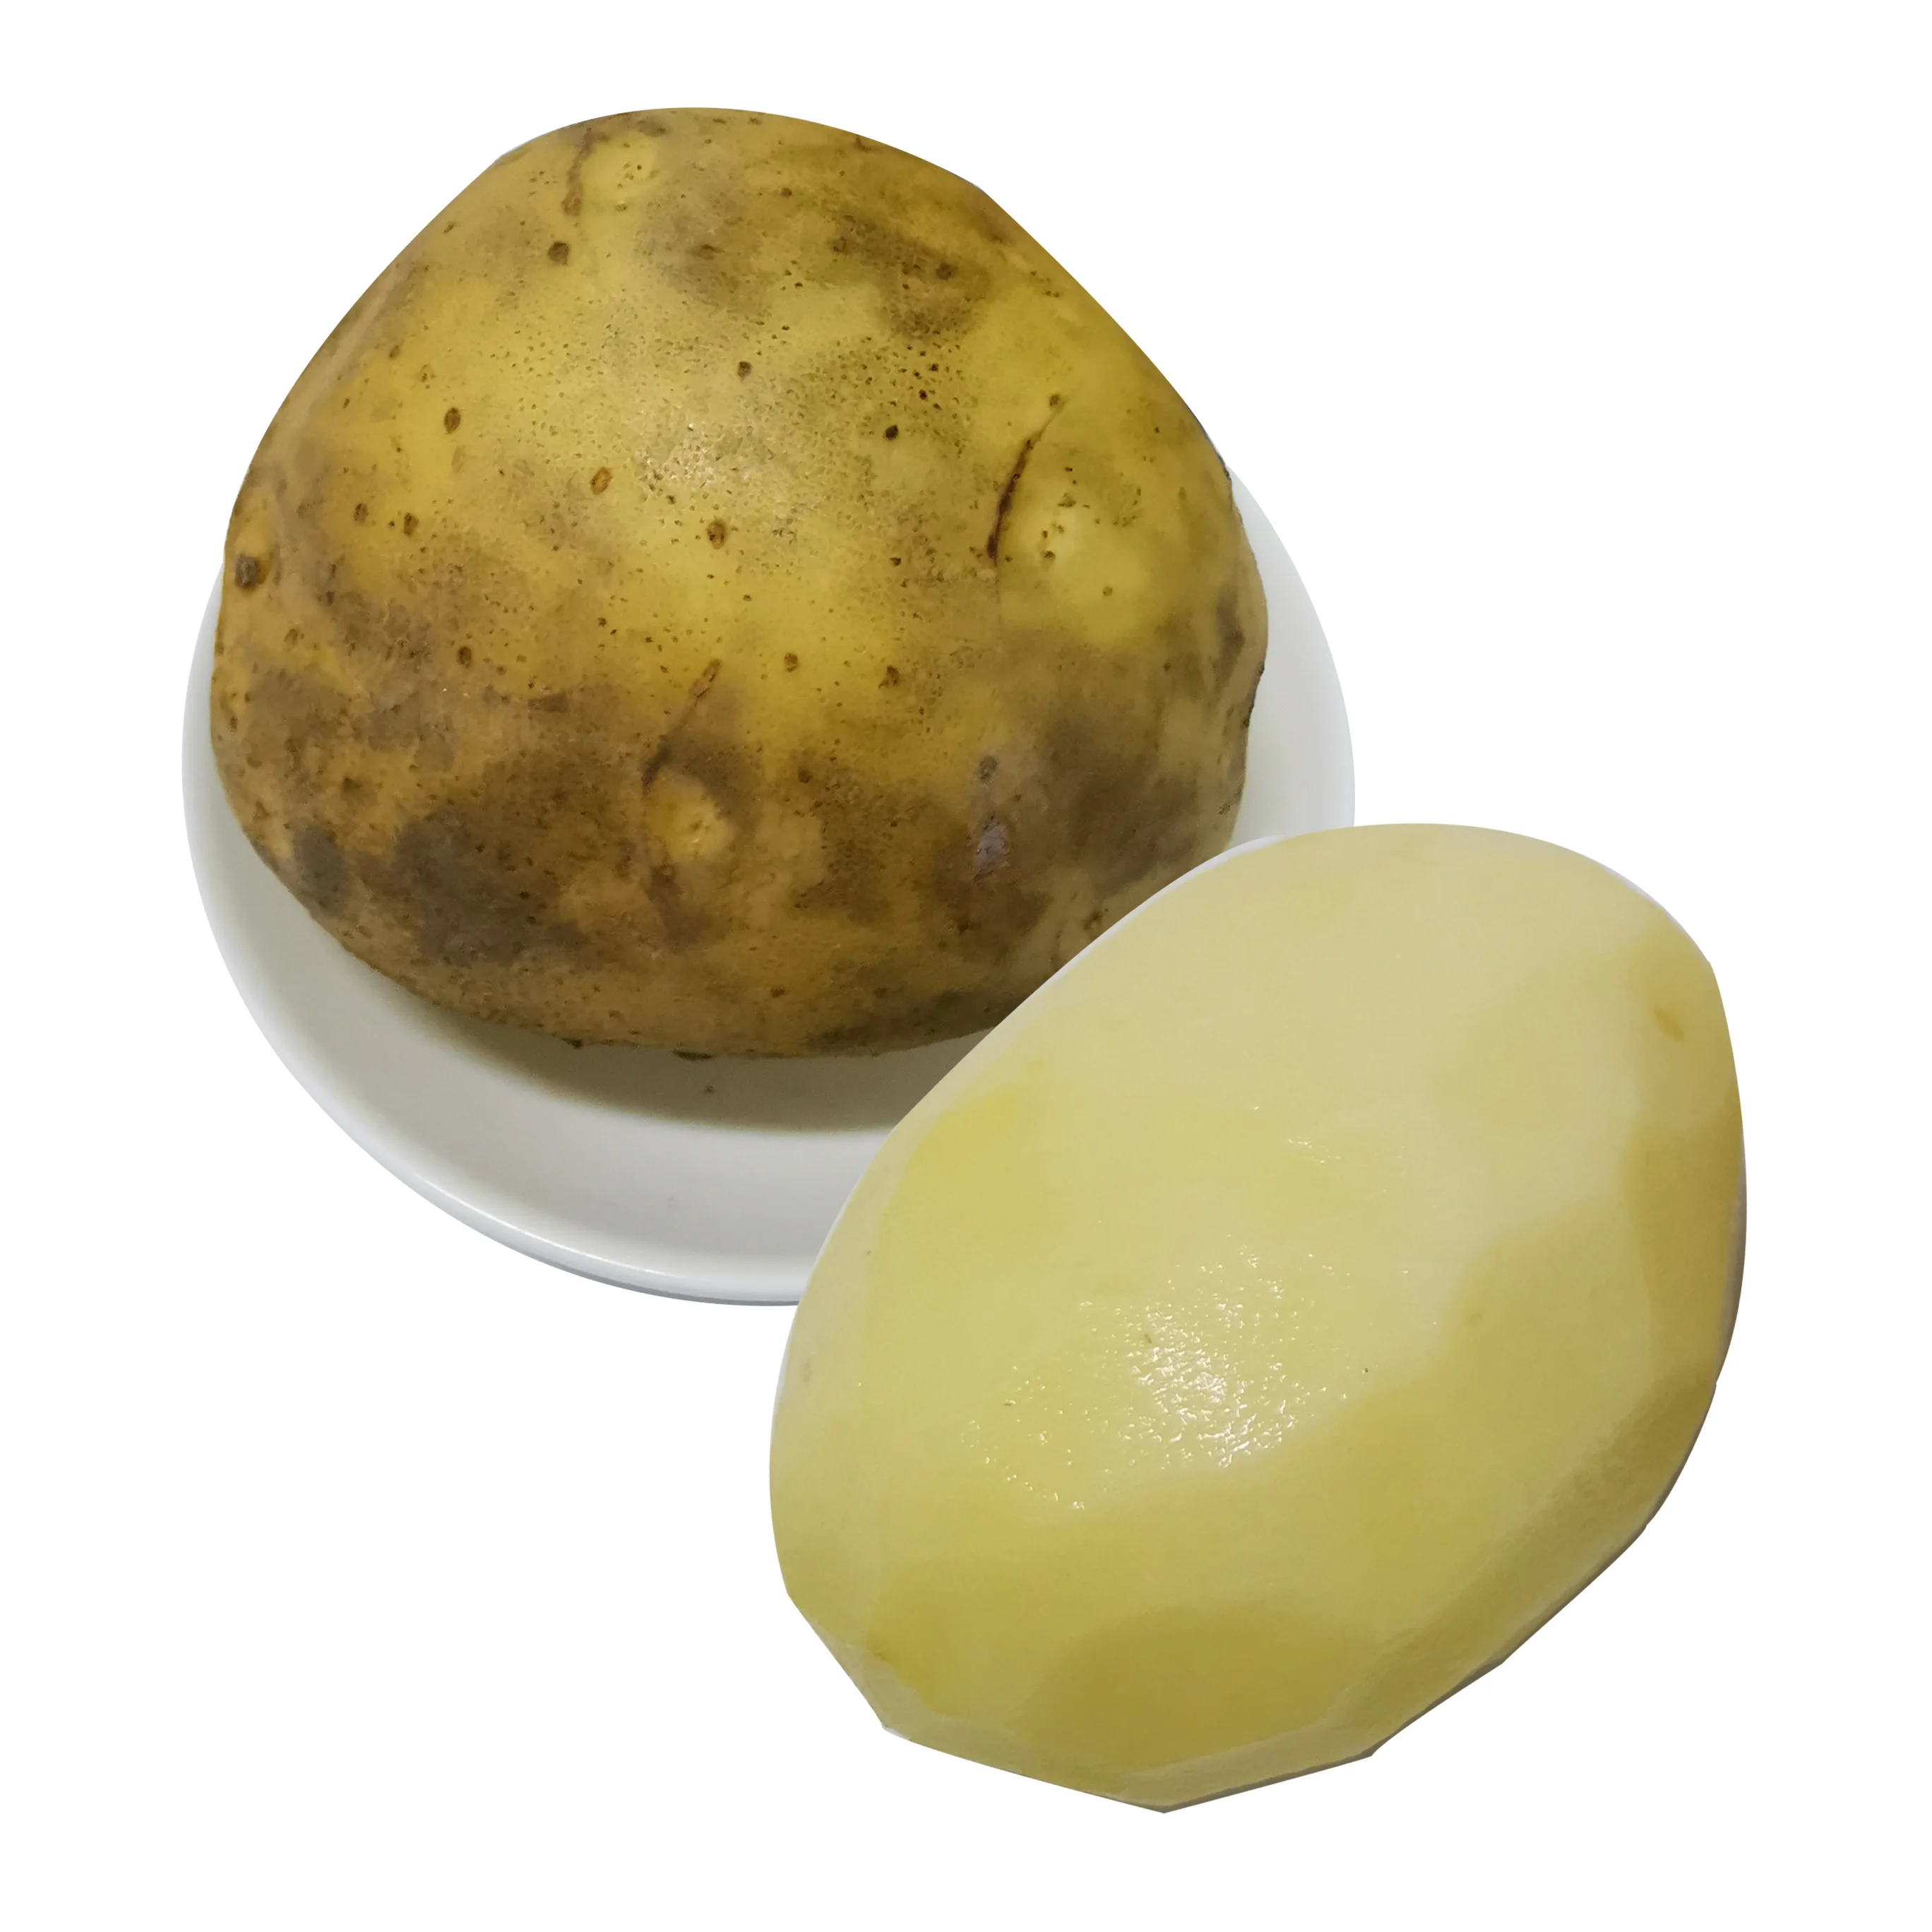 Fresh yellow potatoes